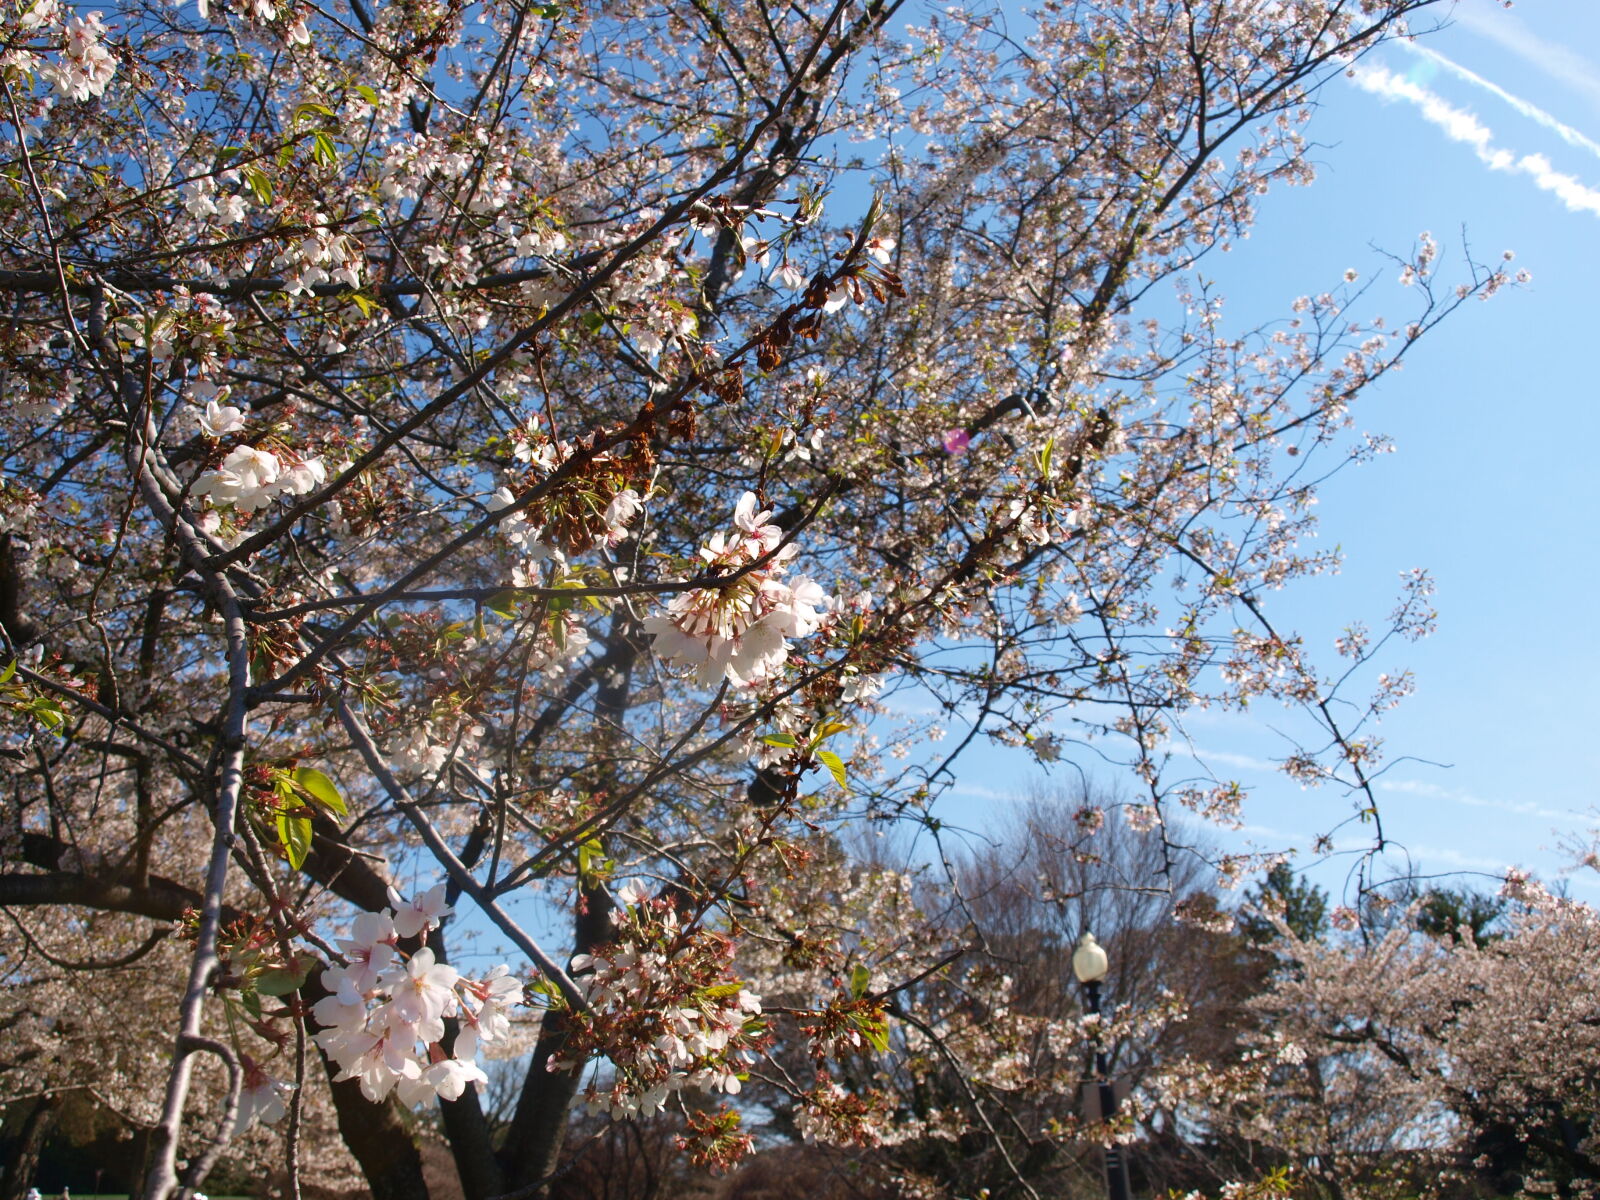 Olympus E-520 (EVOLT E-520) sample photo. Blossom, blossoms, cherry, blossom photography